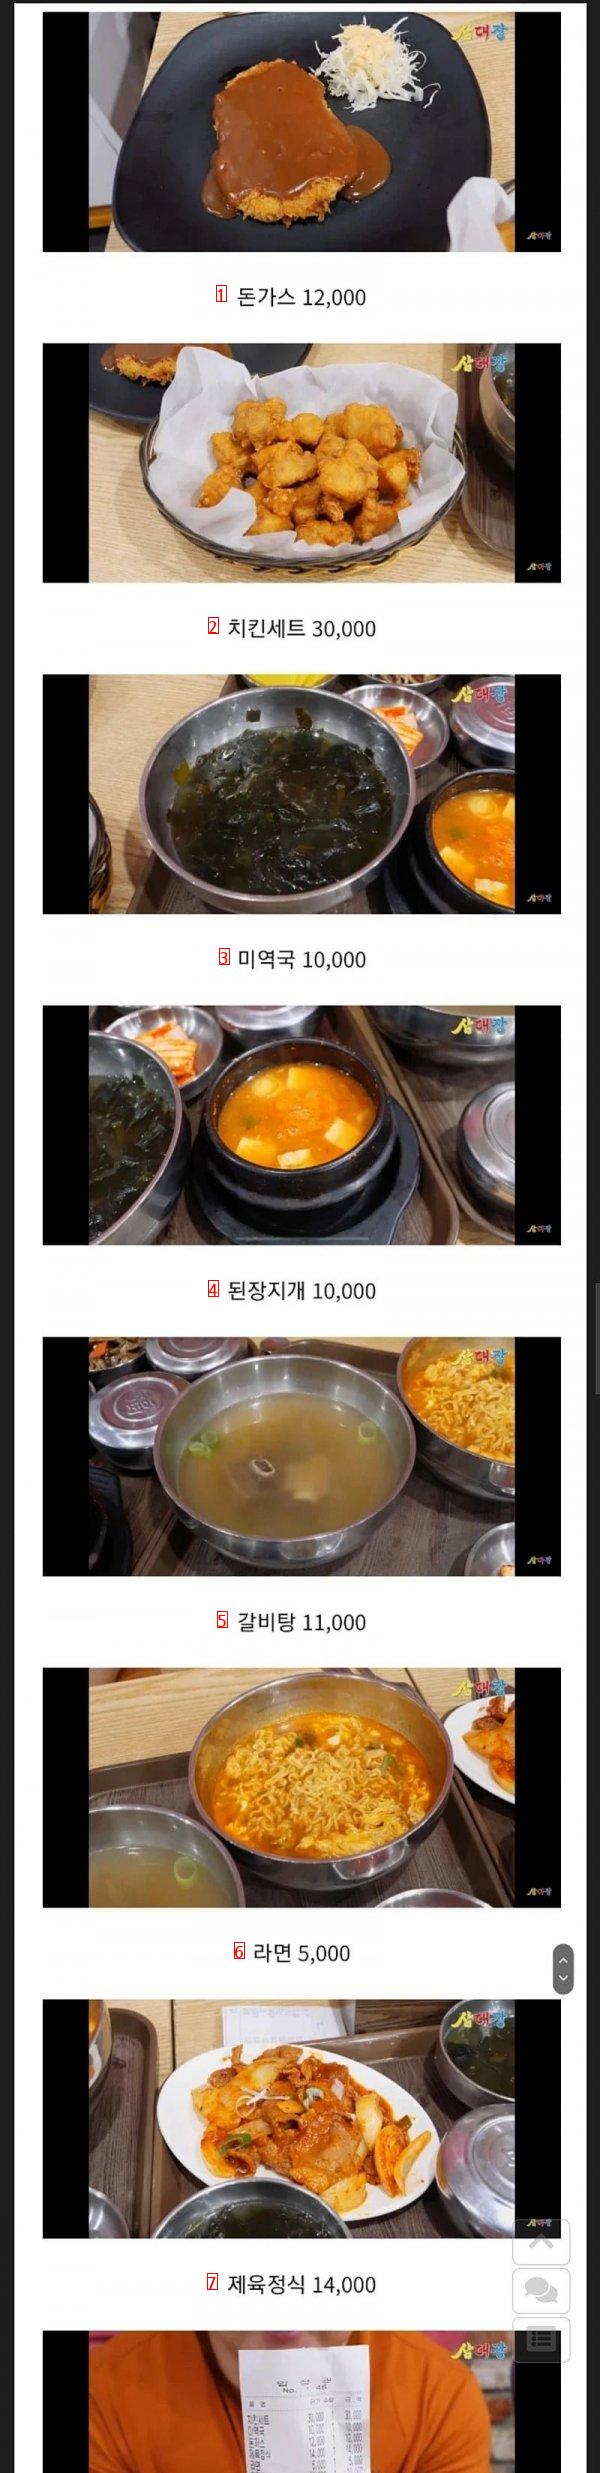 서울 찜질방 음식가격 근황